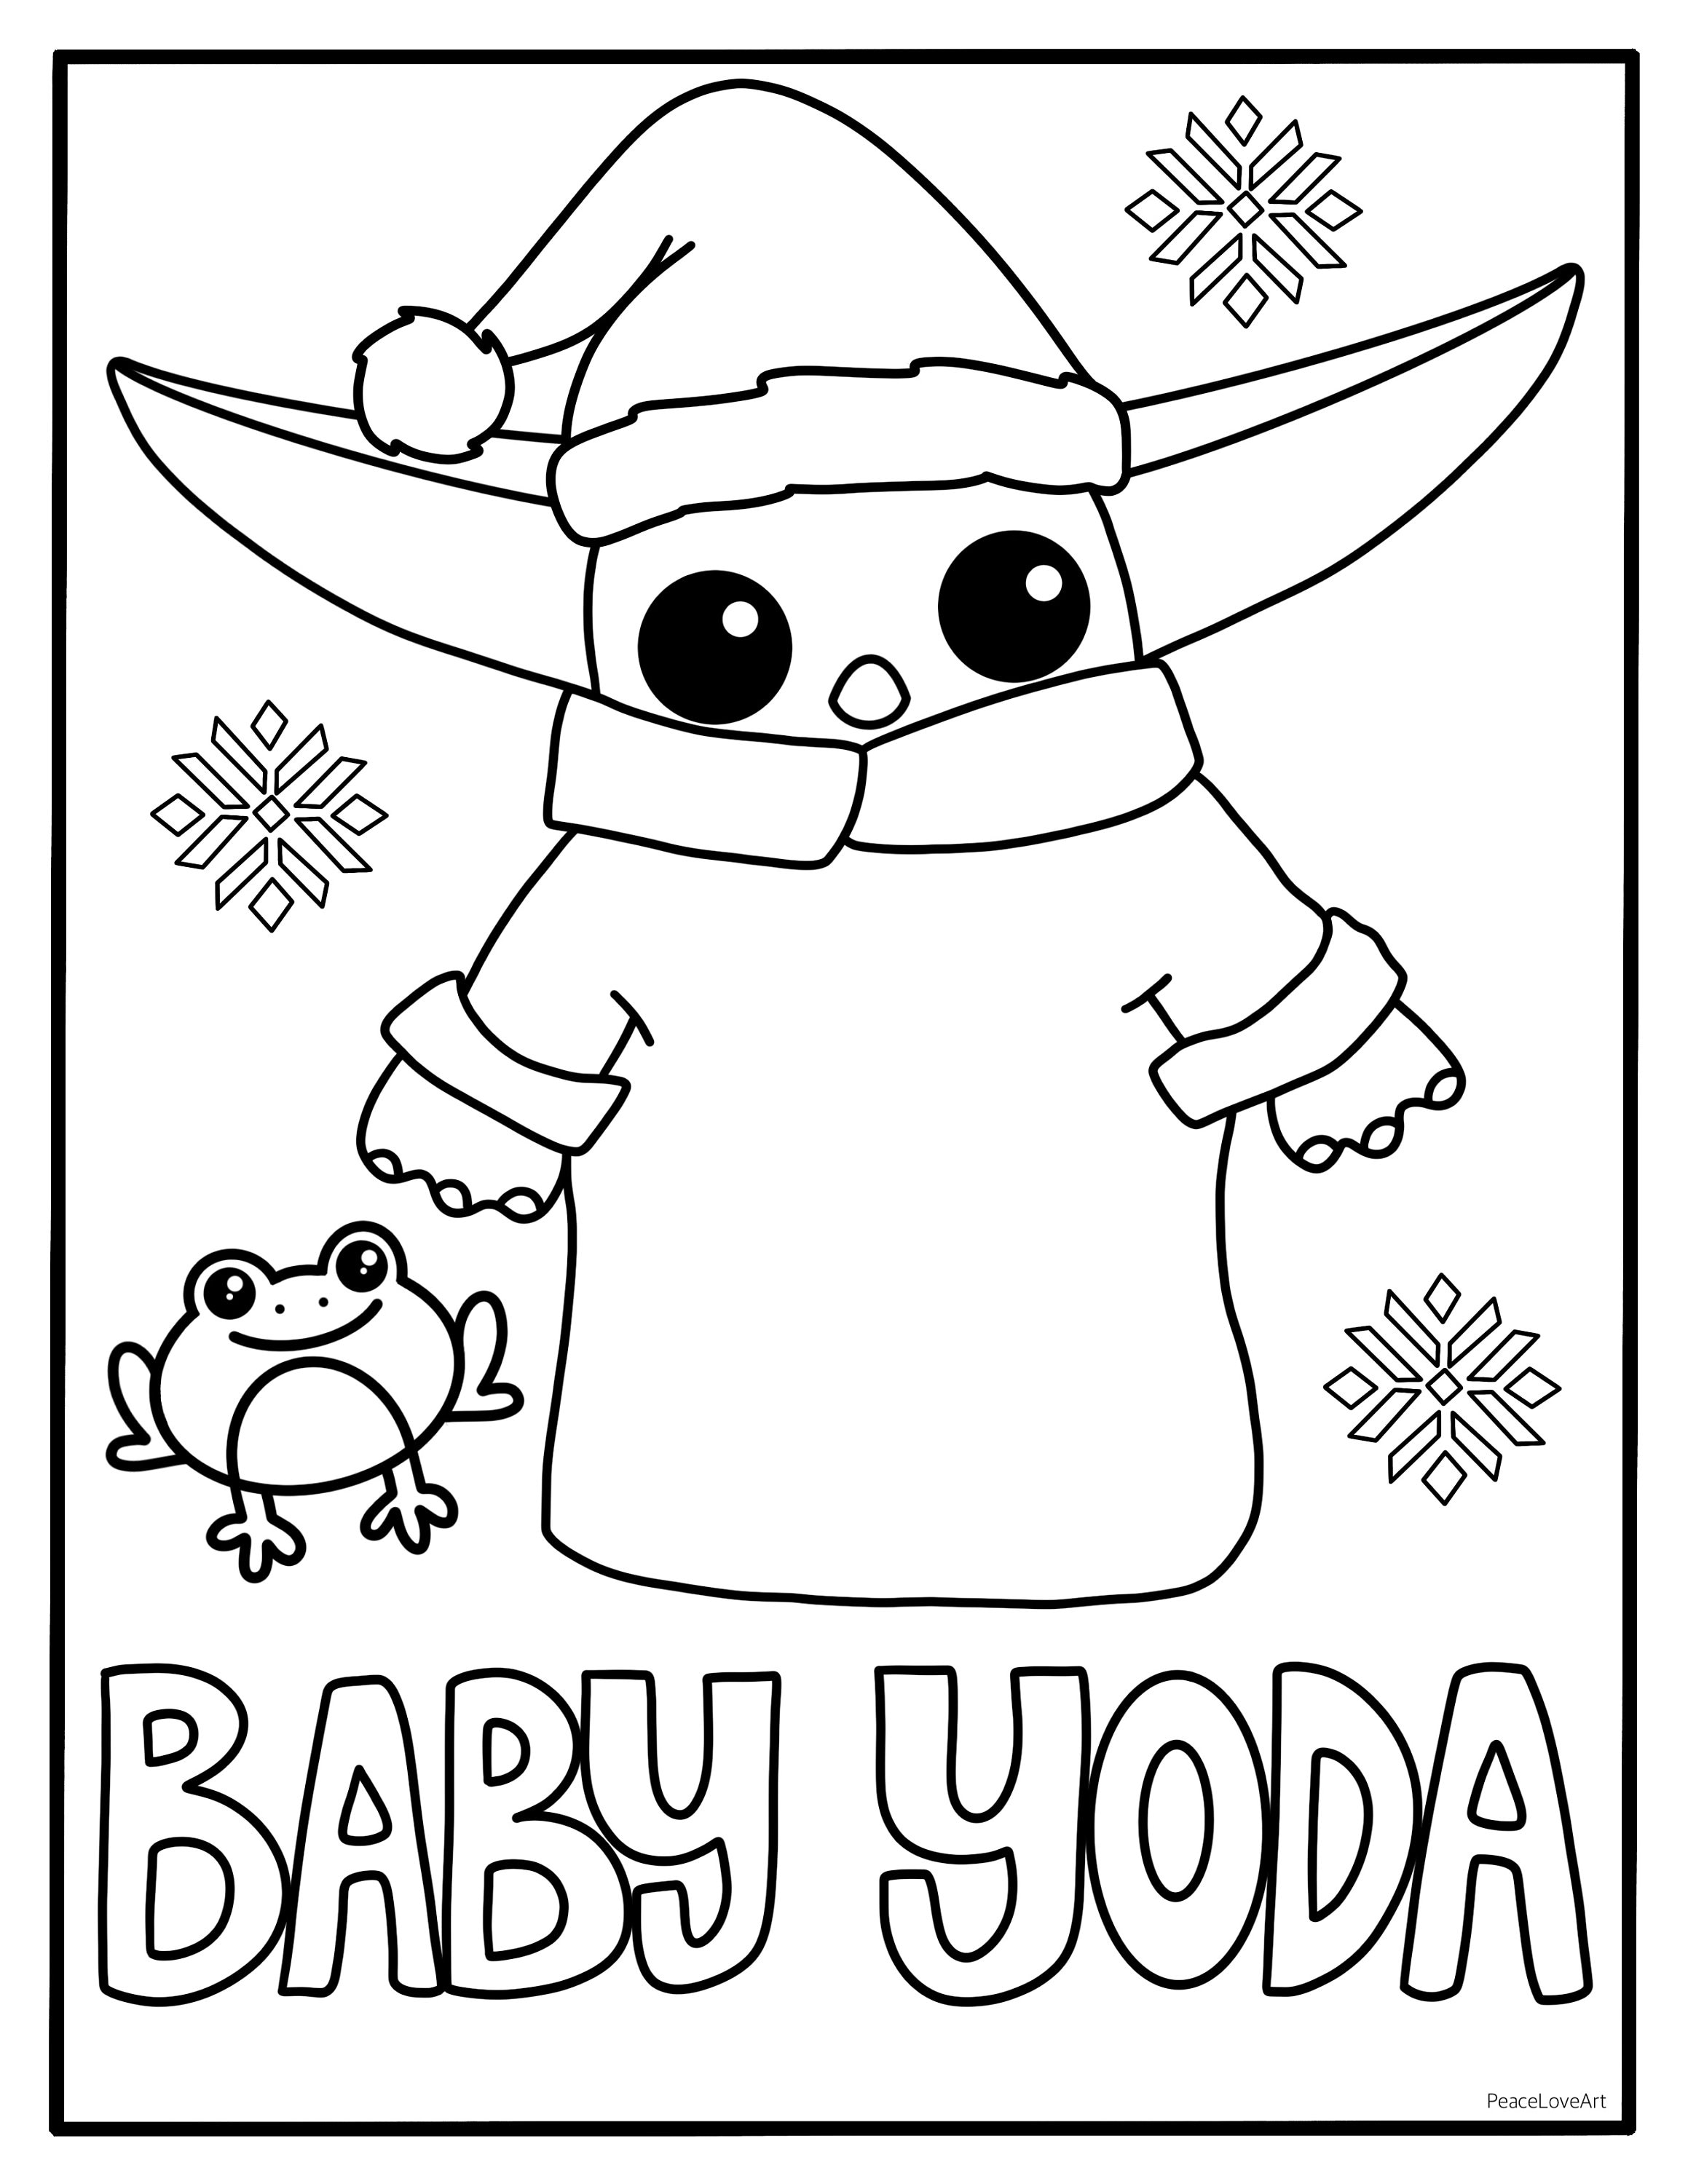 Holiday baby yoda coloring page